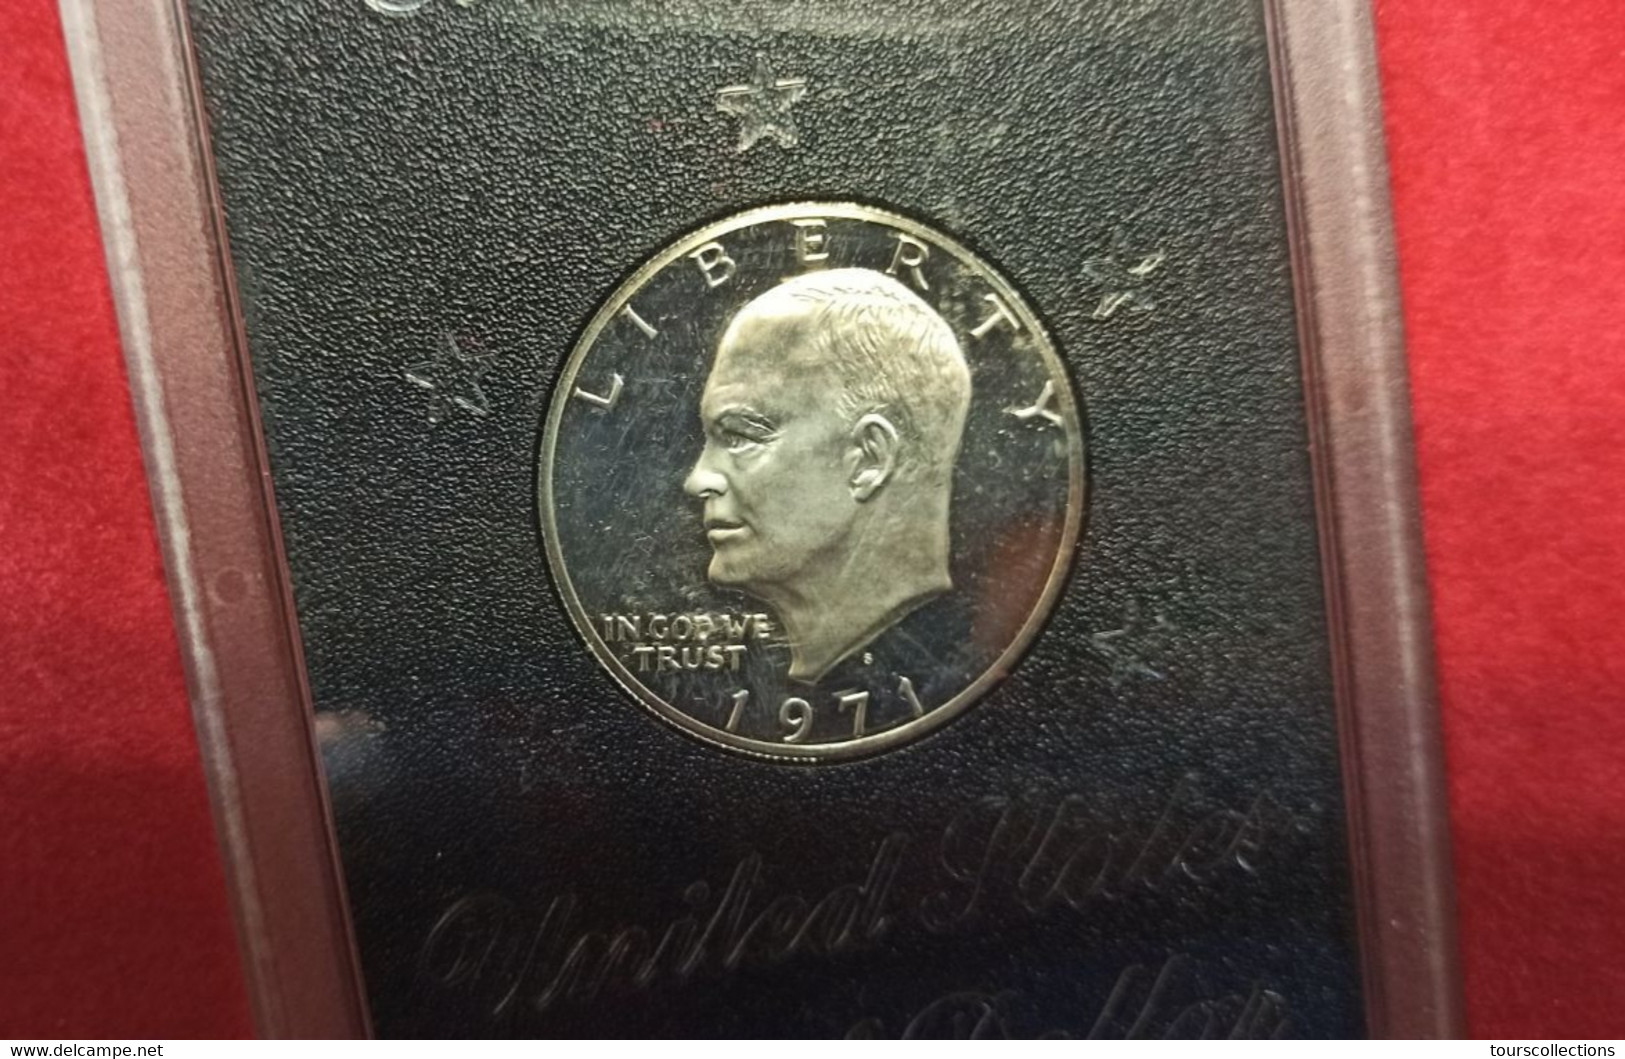 1971 S Eisenhower Silver Dollar Proof Set Scellé et dans sa boîte de présentation d'origine 1 $ Etats Unis USA